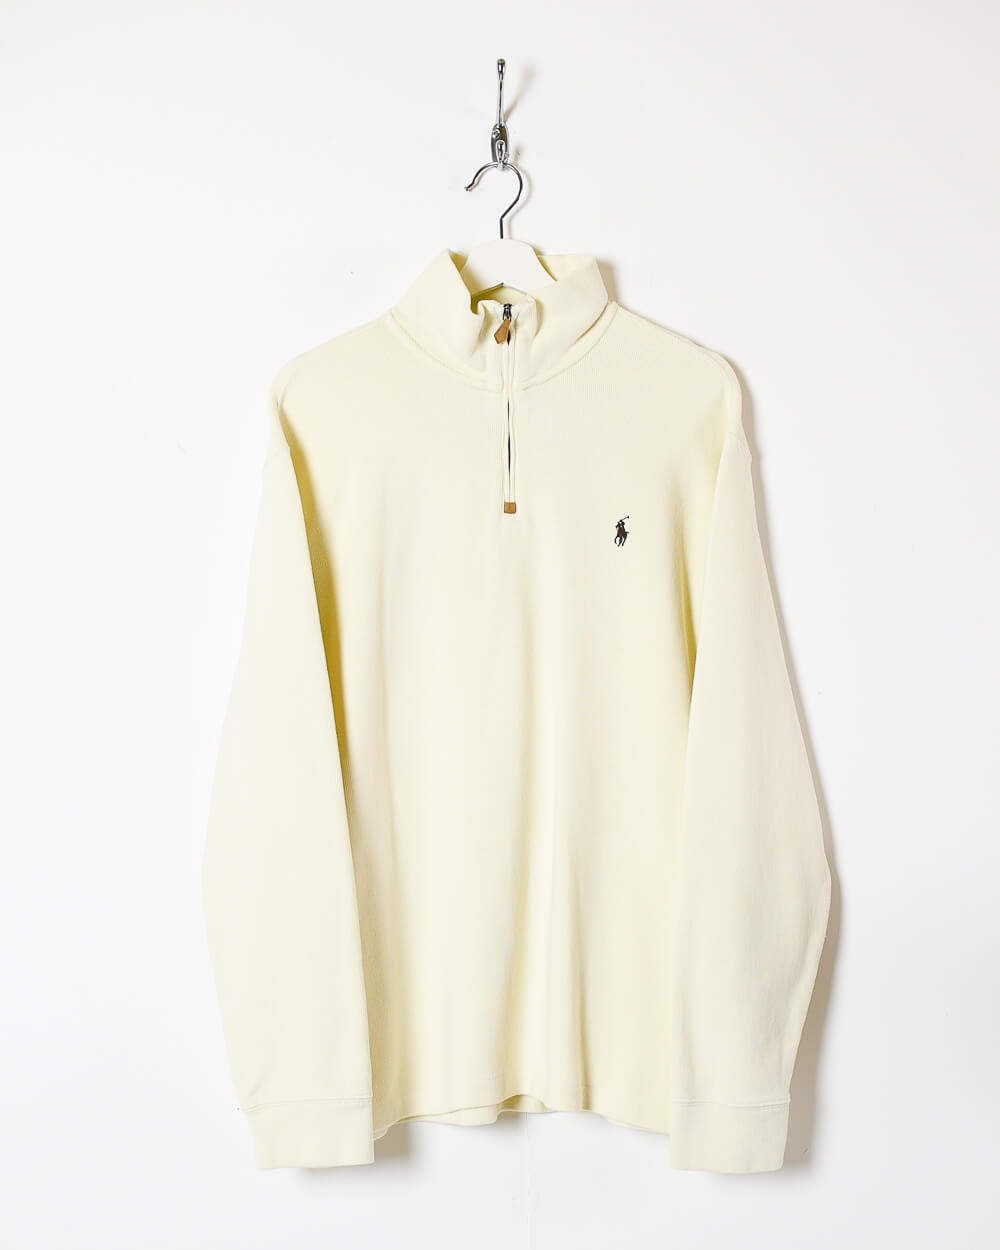 Neutral Ralph Lauren 1/4 Zip Sweatshirt - X-Large